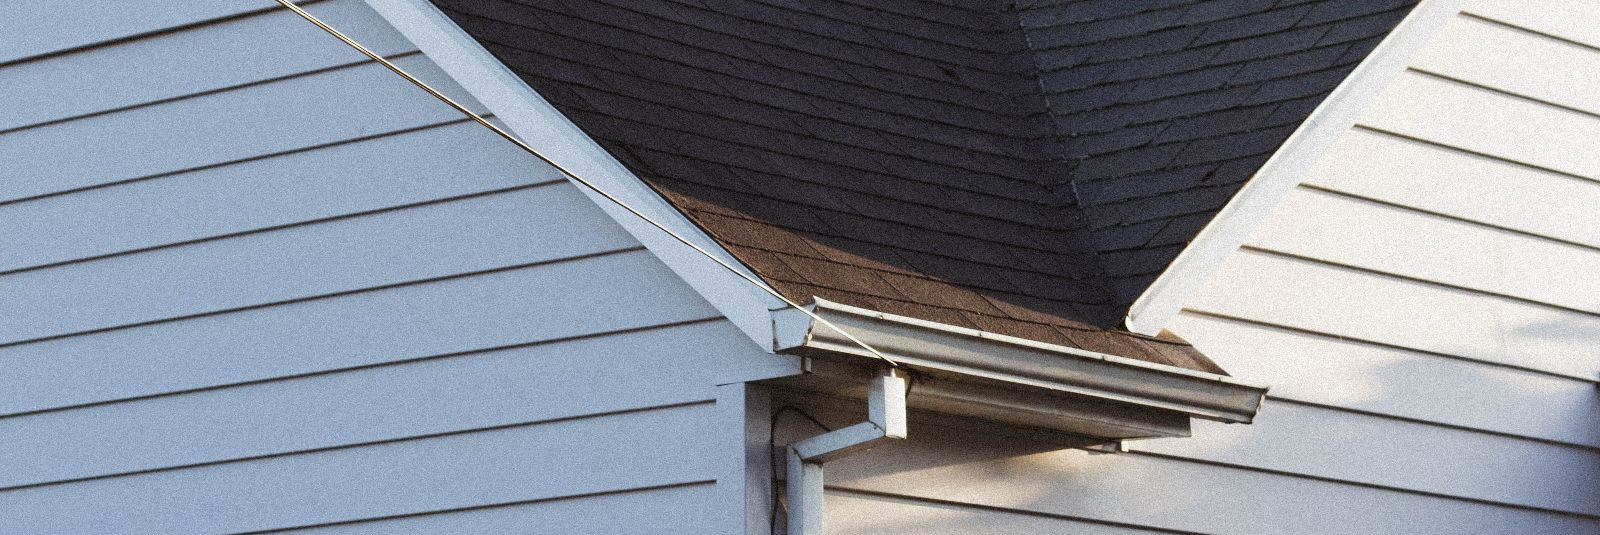 Su katuse seisund on oluline tegur, mis mõjutab sinu kodu ilmet, turvalisust ja energiatõhusust. Kas oled märganud märke, mis viitavad sellele, et su katusele v